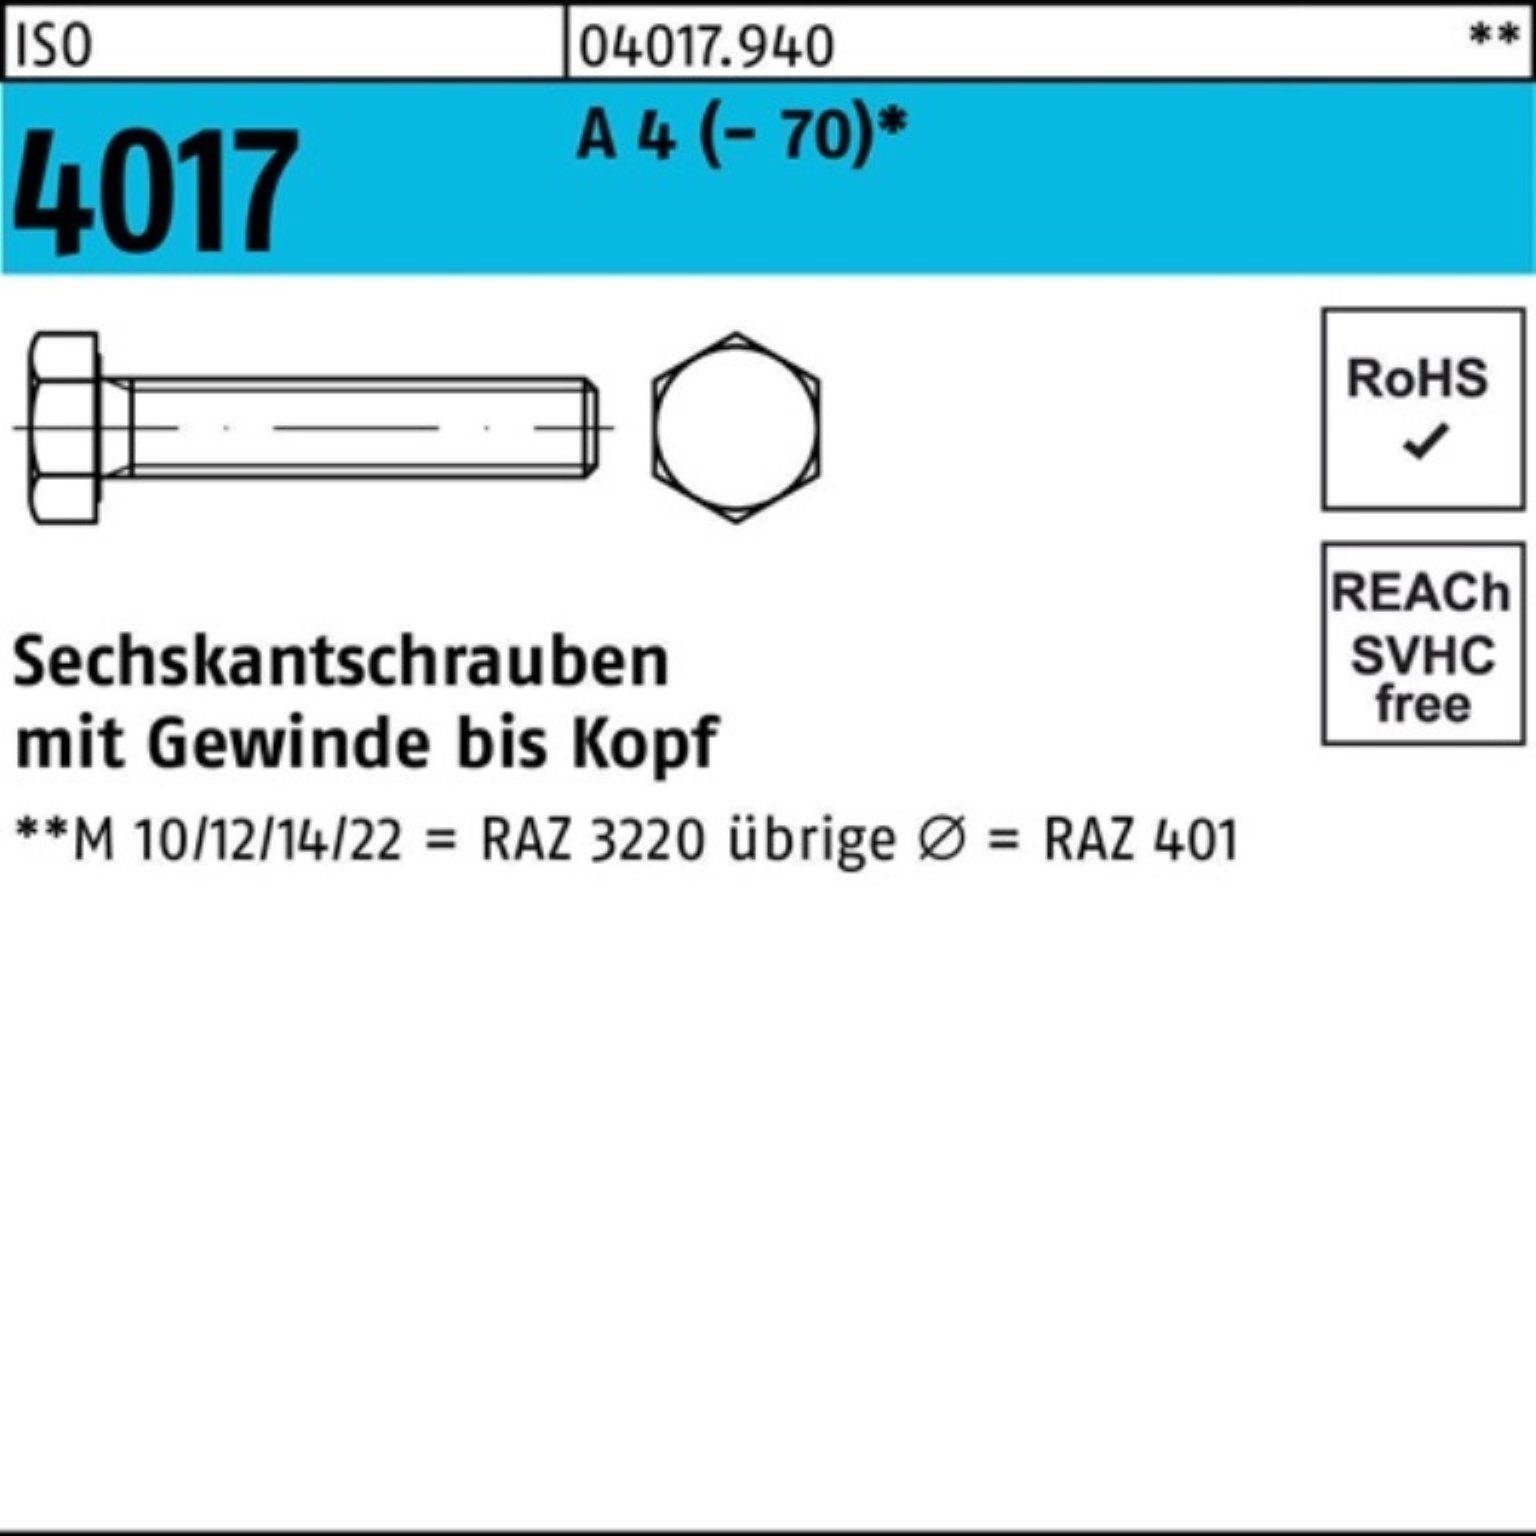 ISO 50 Sechskantschraube 4 100er (70) Bufab Pack 4017 A Stück 50 Sechskantschraube M12x VG